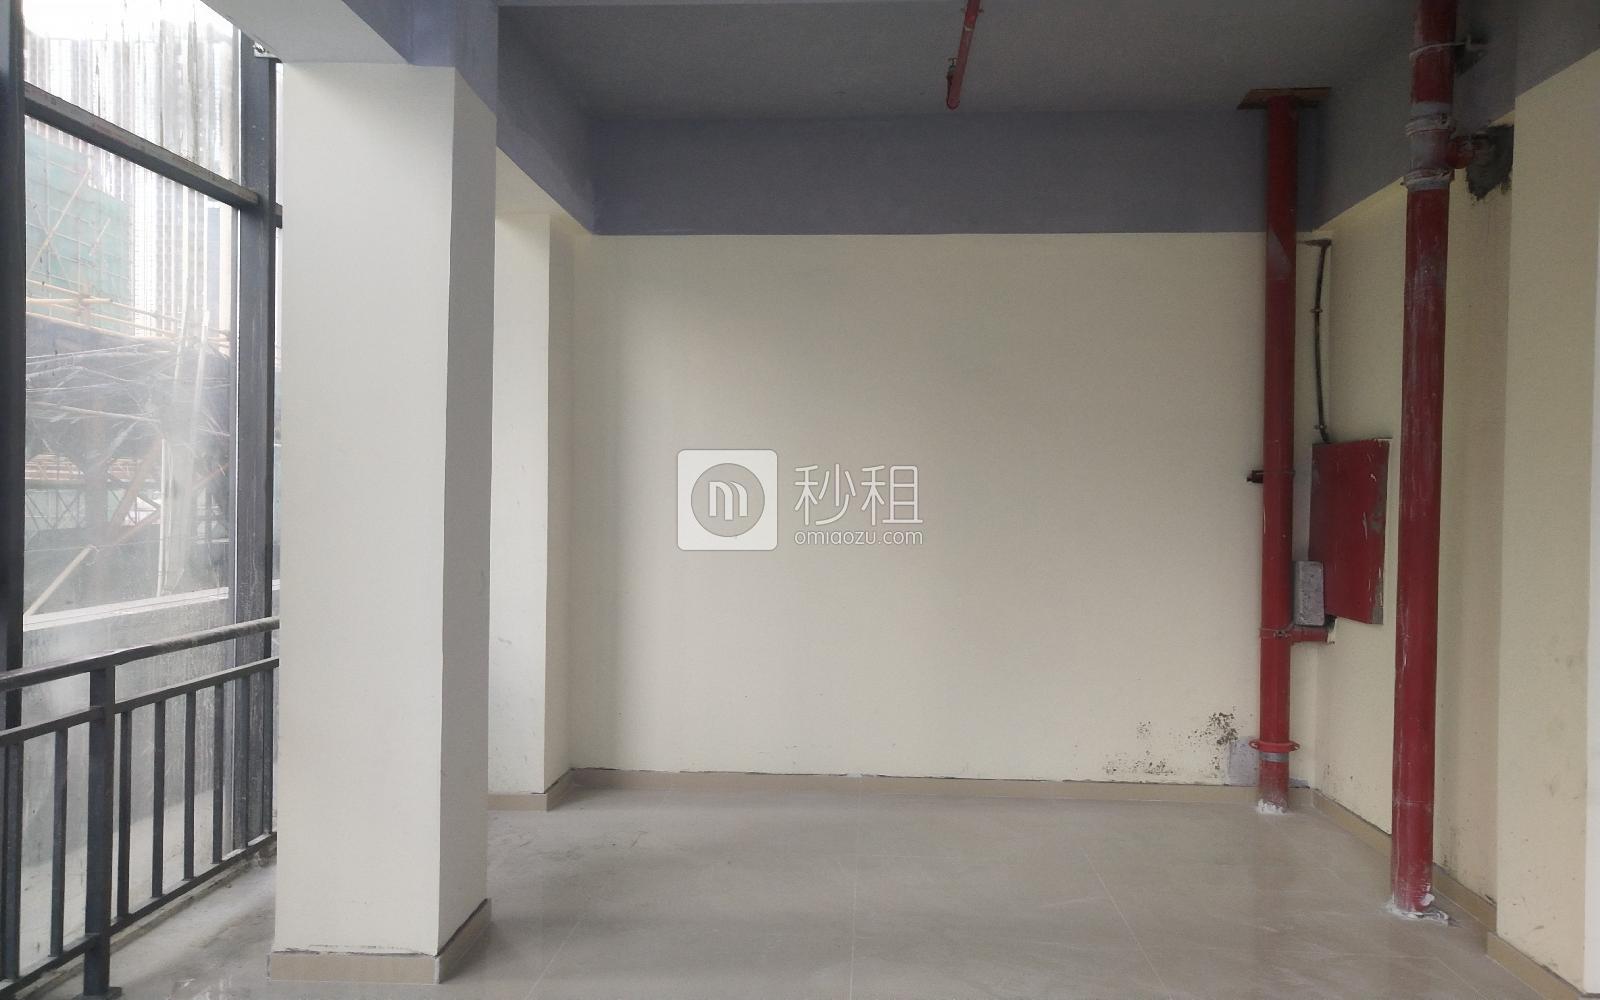  铨森泰文化产业园写字楼出租150平米精装办公室53元/m².月